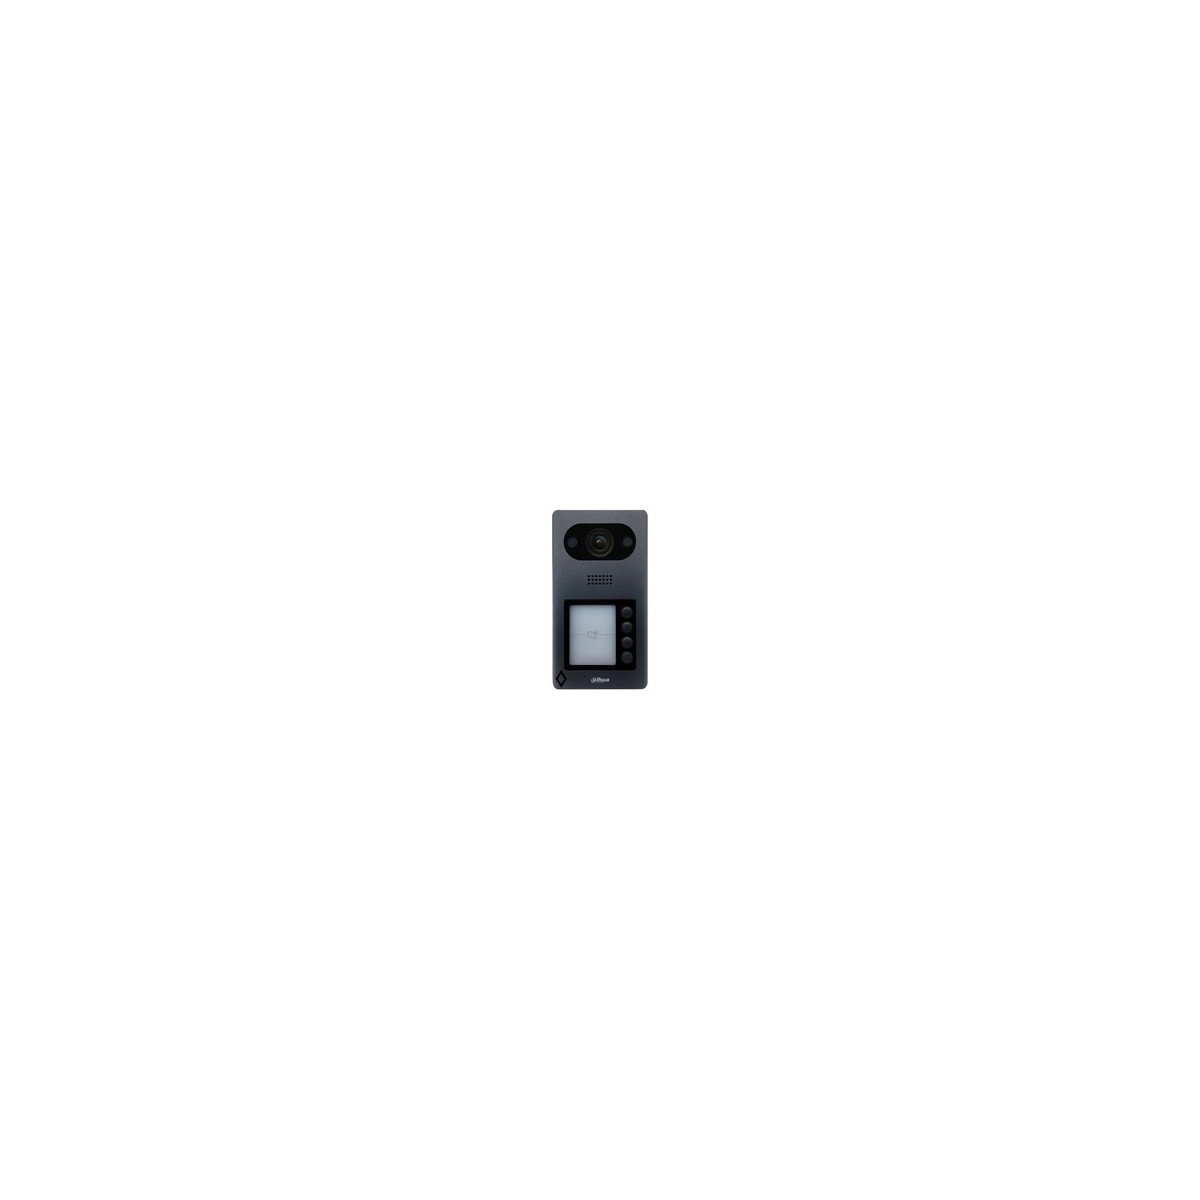 Dahua Technology VTO3211D-P4 access control reader Basic access control reader Black